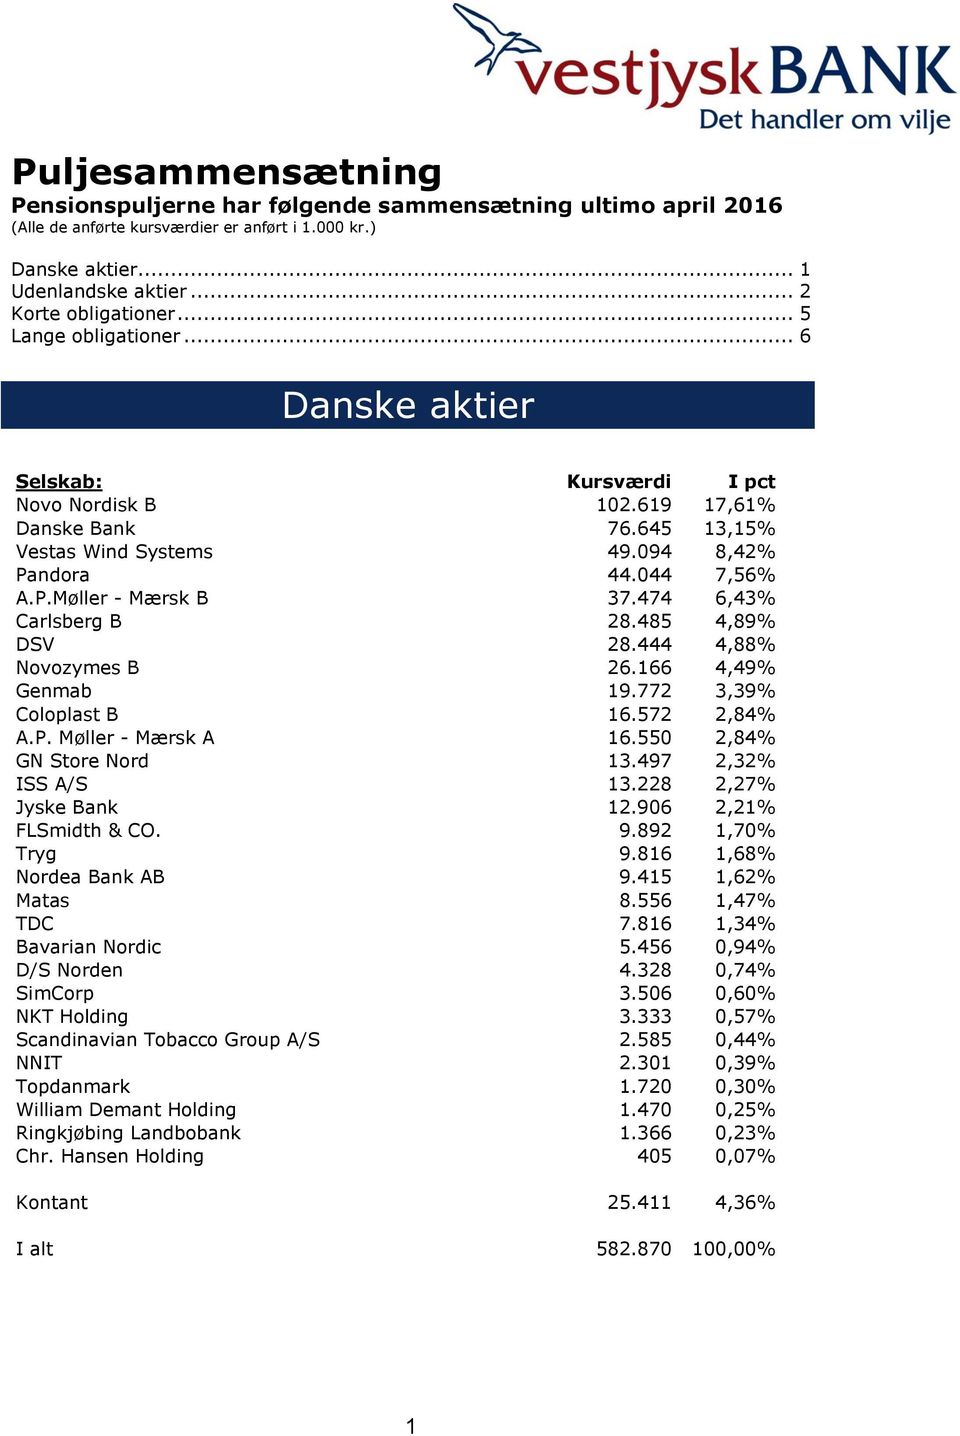 474 6,43% Carlsberg B 28.485 4,89% DSV 28.444 4,88% Novozymes B 26.166 4,49% Genmab 19.772 3,39% Coloplast B 16.572 2,84% A.P. Møller - Mærsk A 16.550 2,84% GN Store Nord 13.497 2,32% ISS A/S 13.